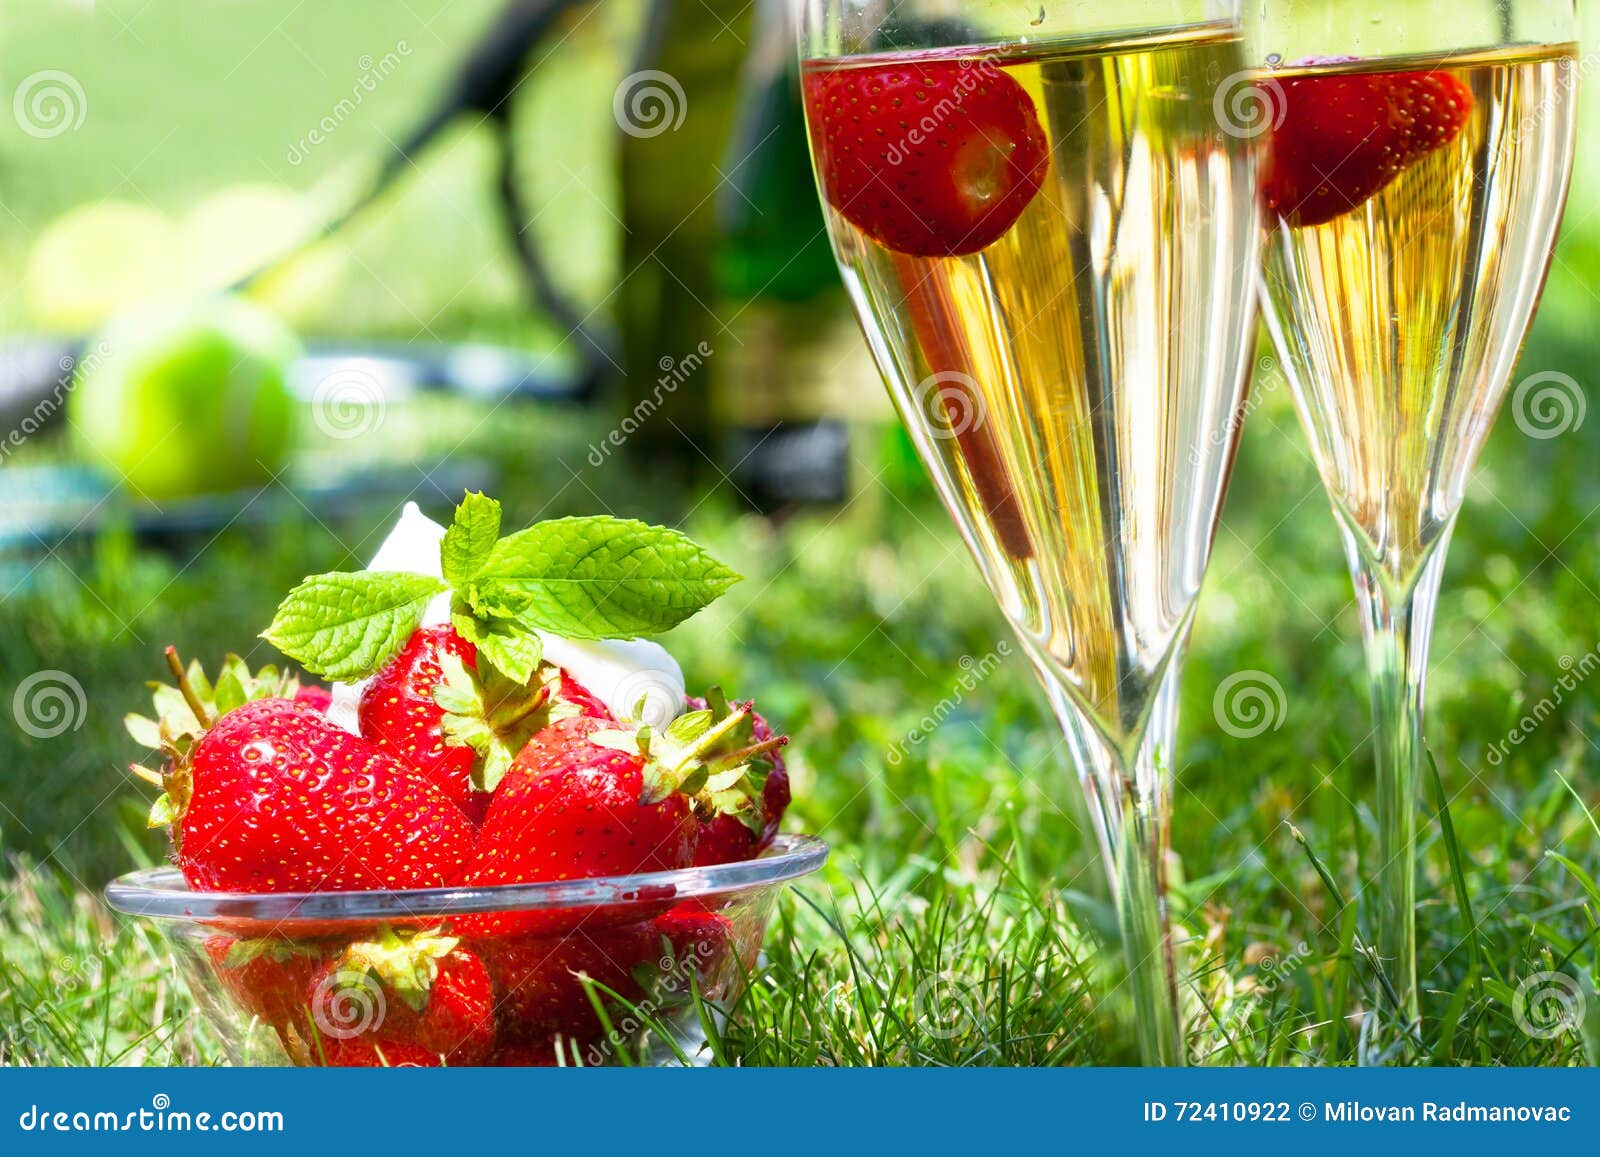 Erdbeeren Mit Schlagsahne Und Champagner Stockfoto - Bild von erdbeere ...